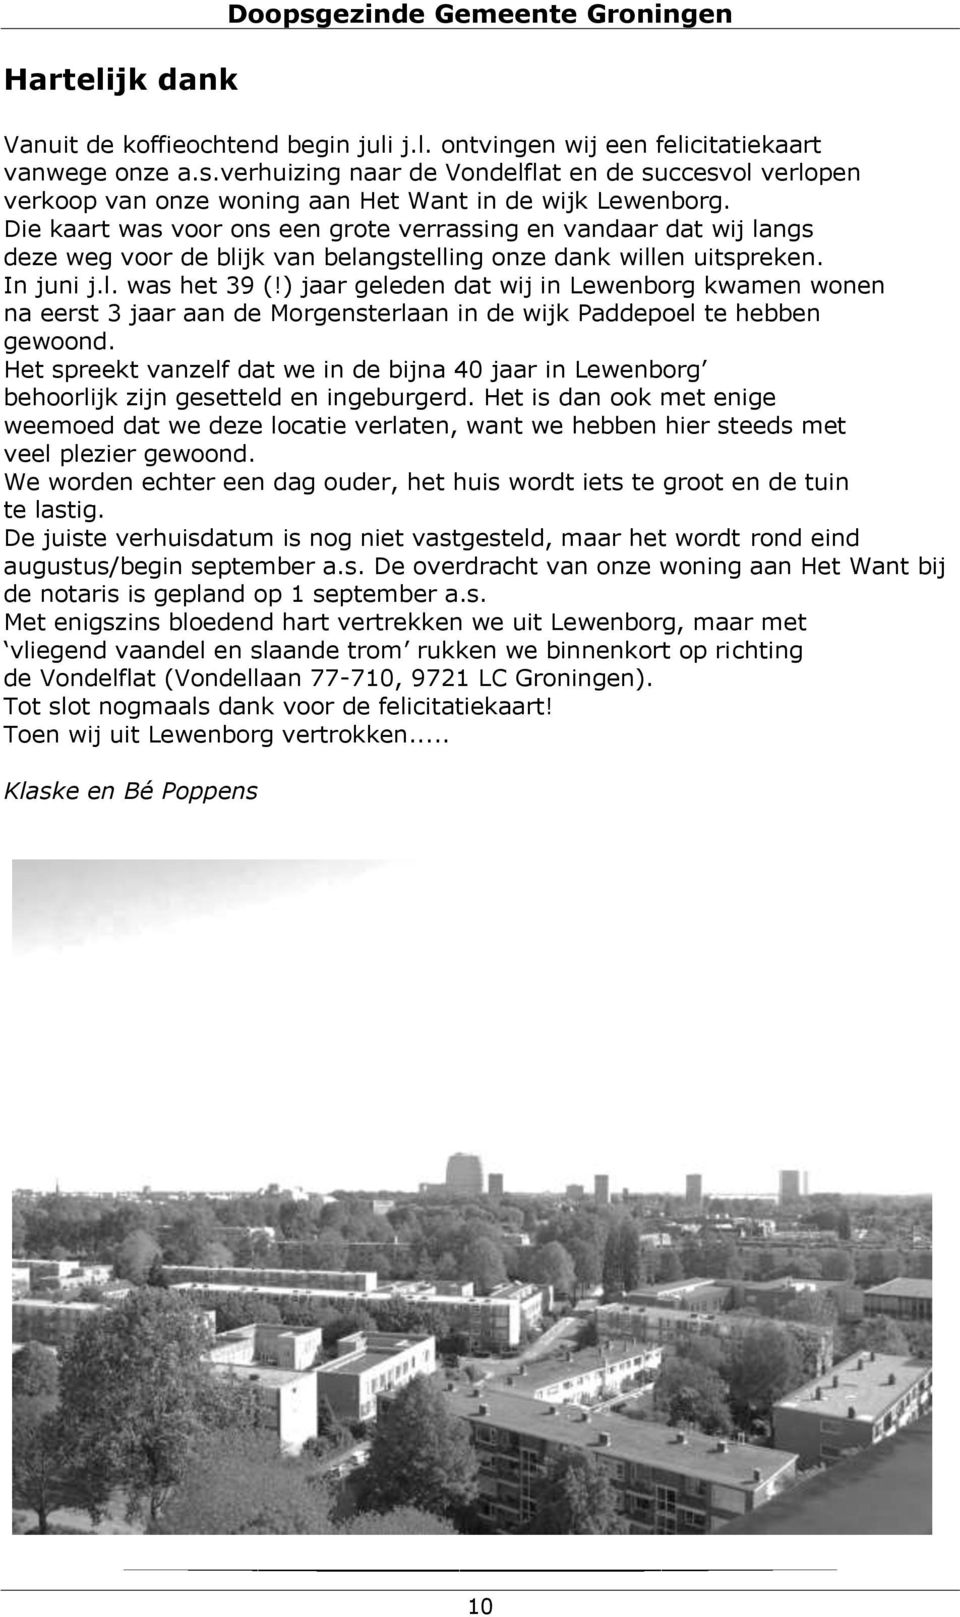 ) jaar geleden dat wij in Lewenborg kwamen wonen na eerst 3 jaar aan de Morgensterlaan in de wijk Paddepoel te hebben gewoond.